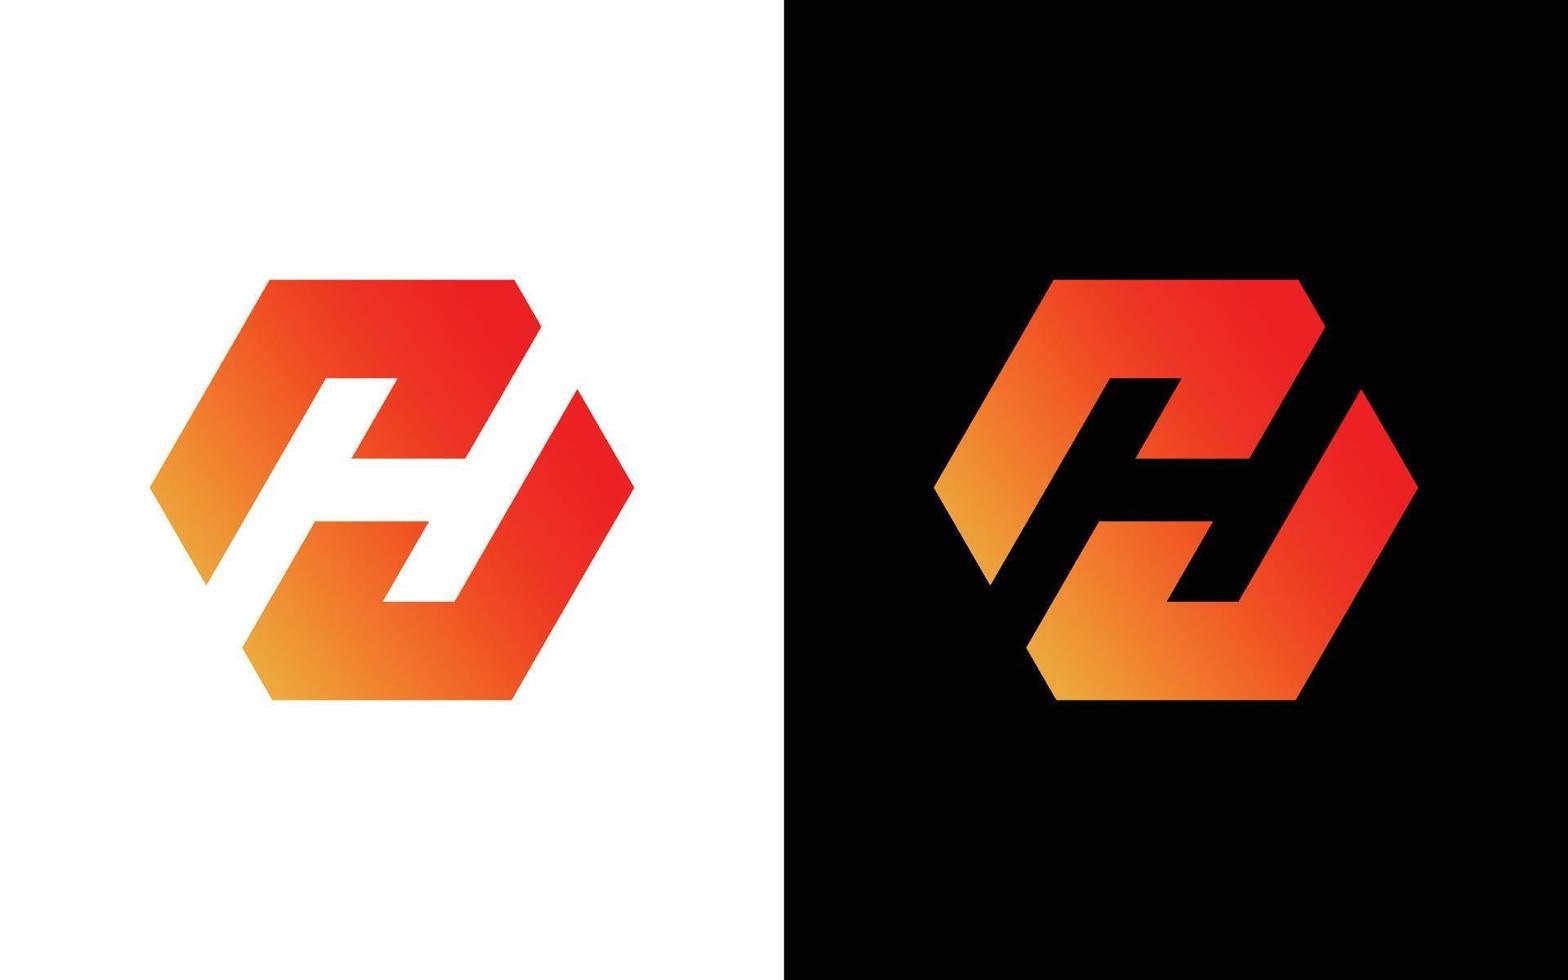 h monogramma logo con griglia metodo design professionista vettore